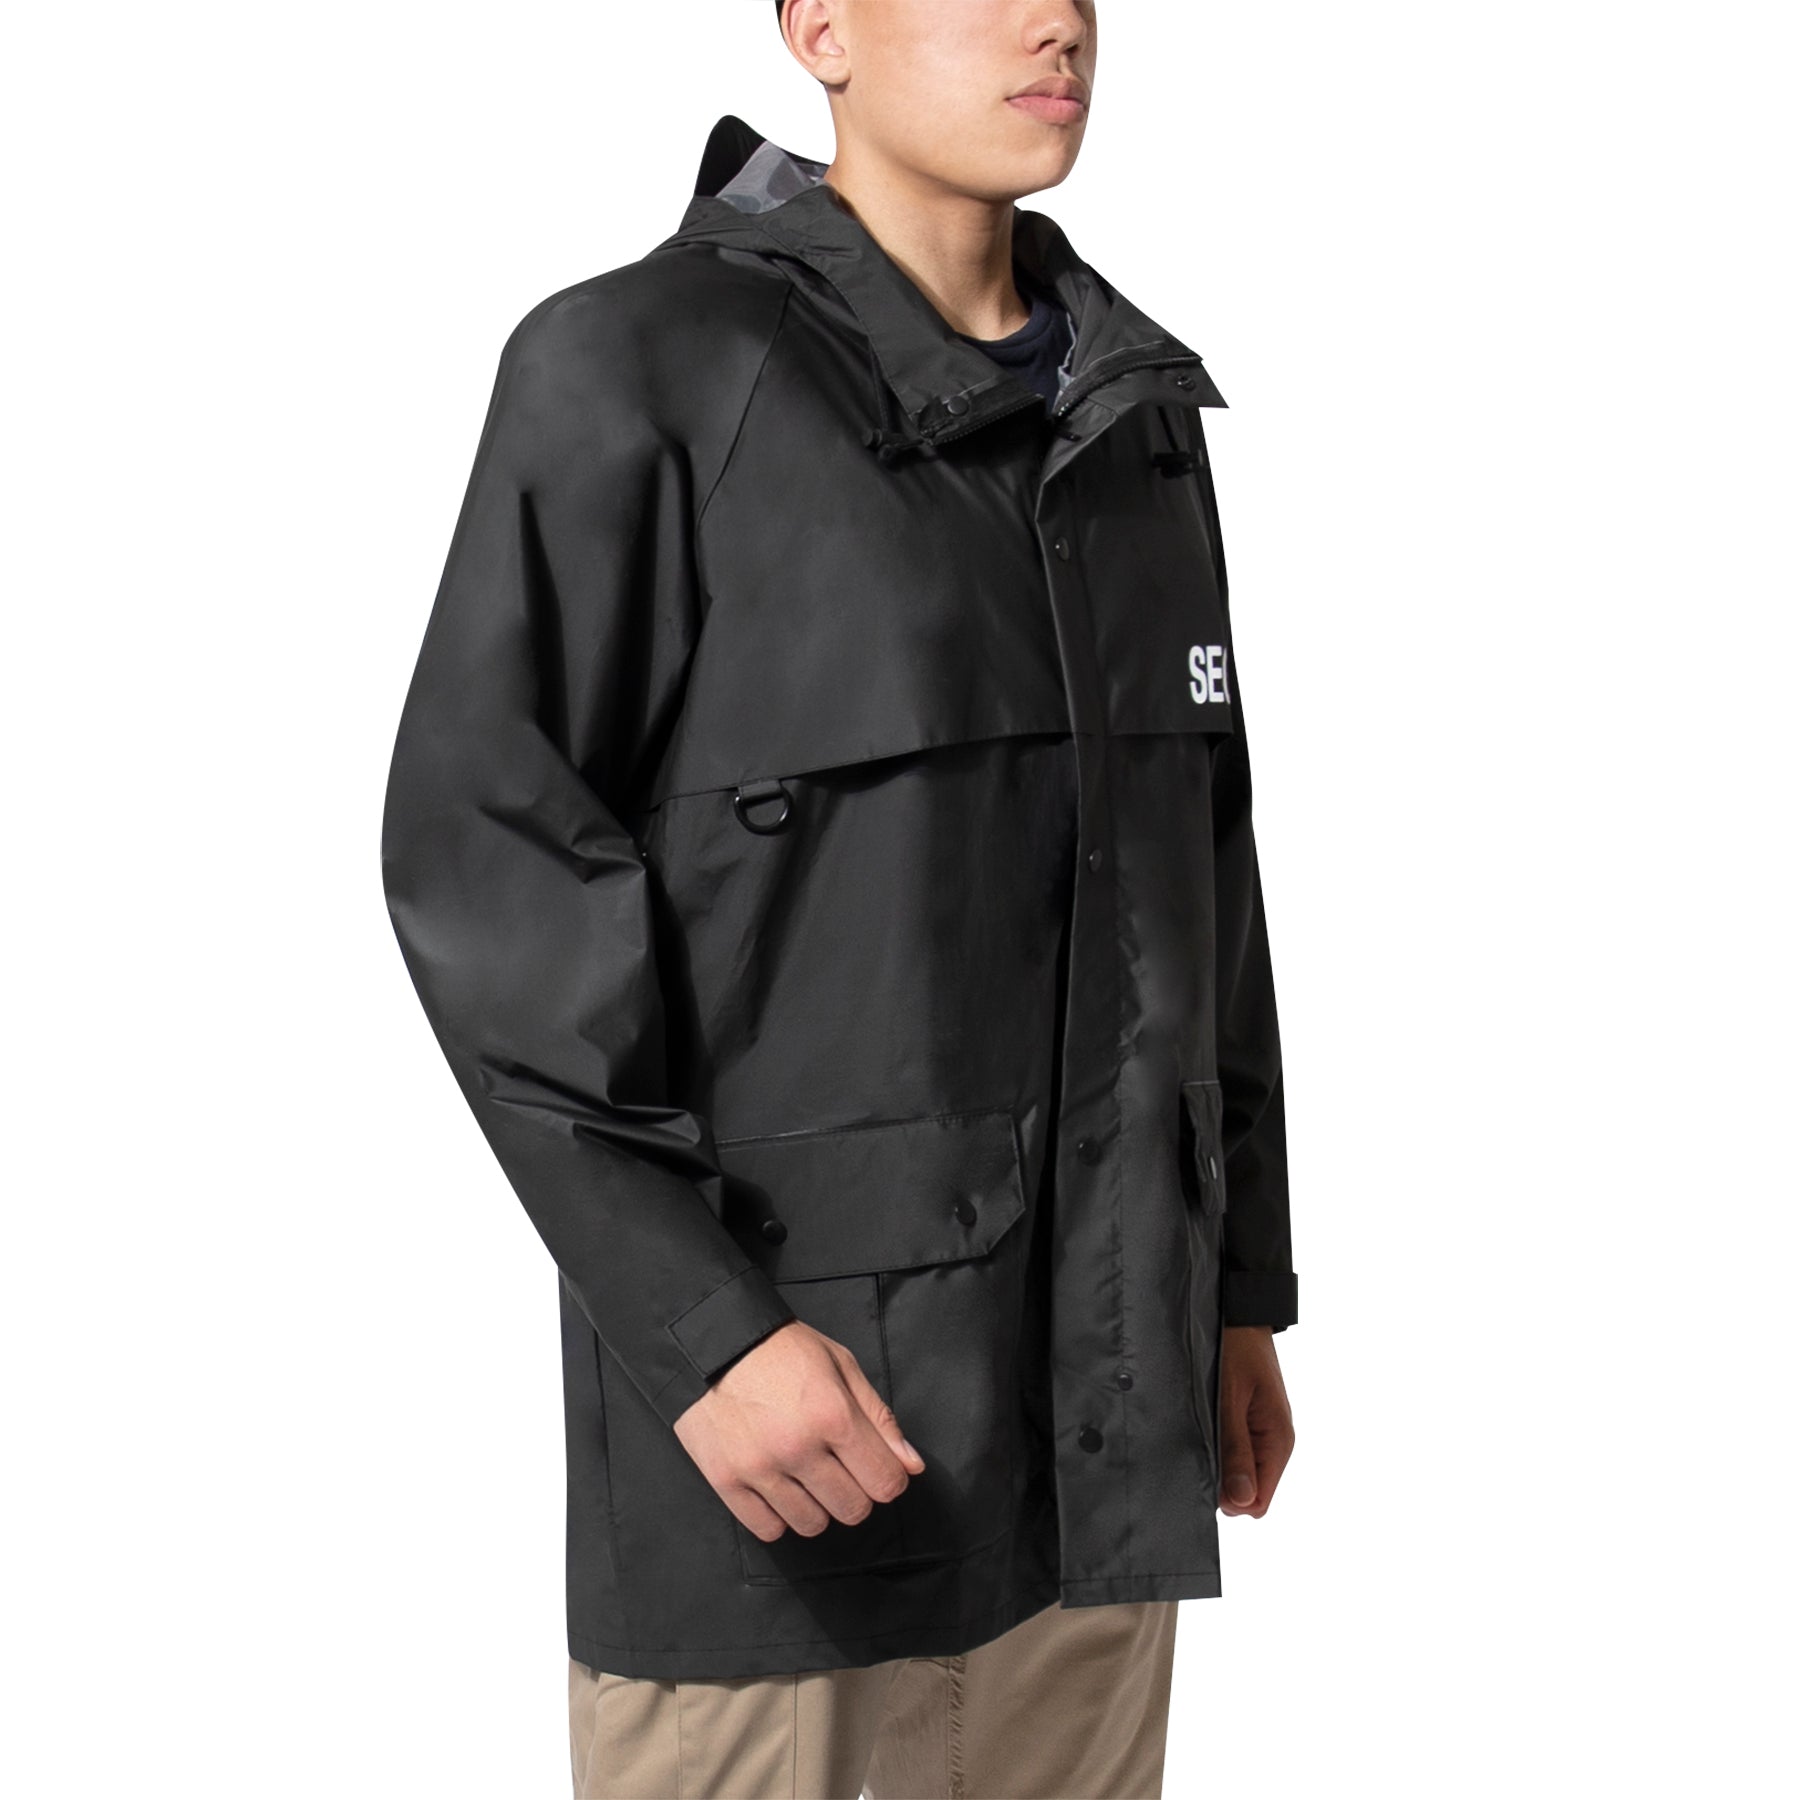 Rothco Security Nylon Rain Jacket